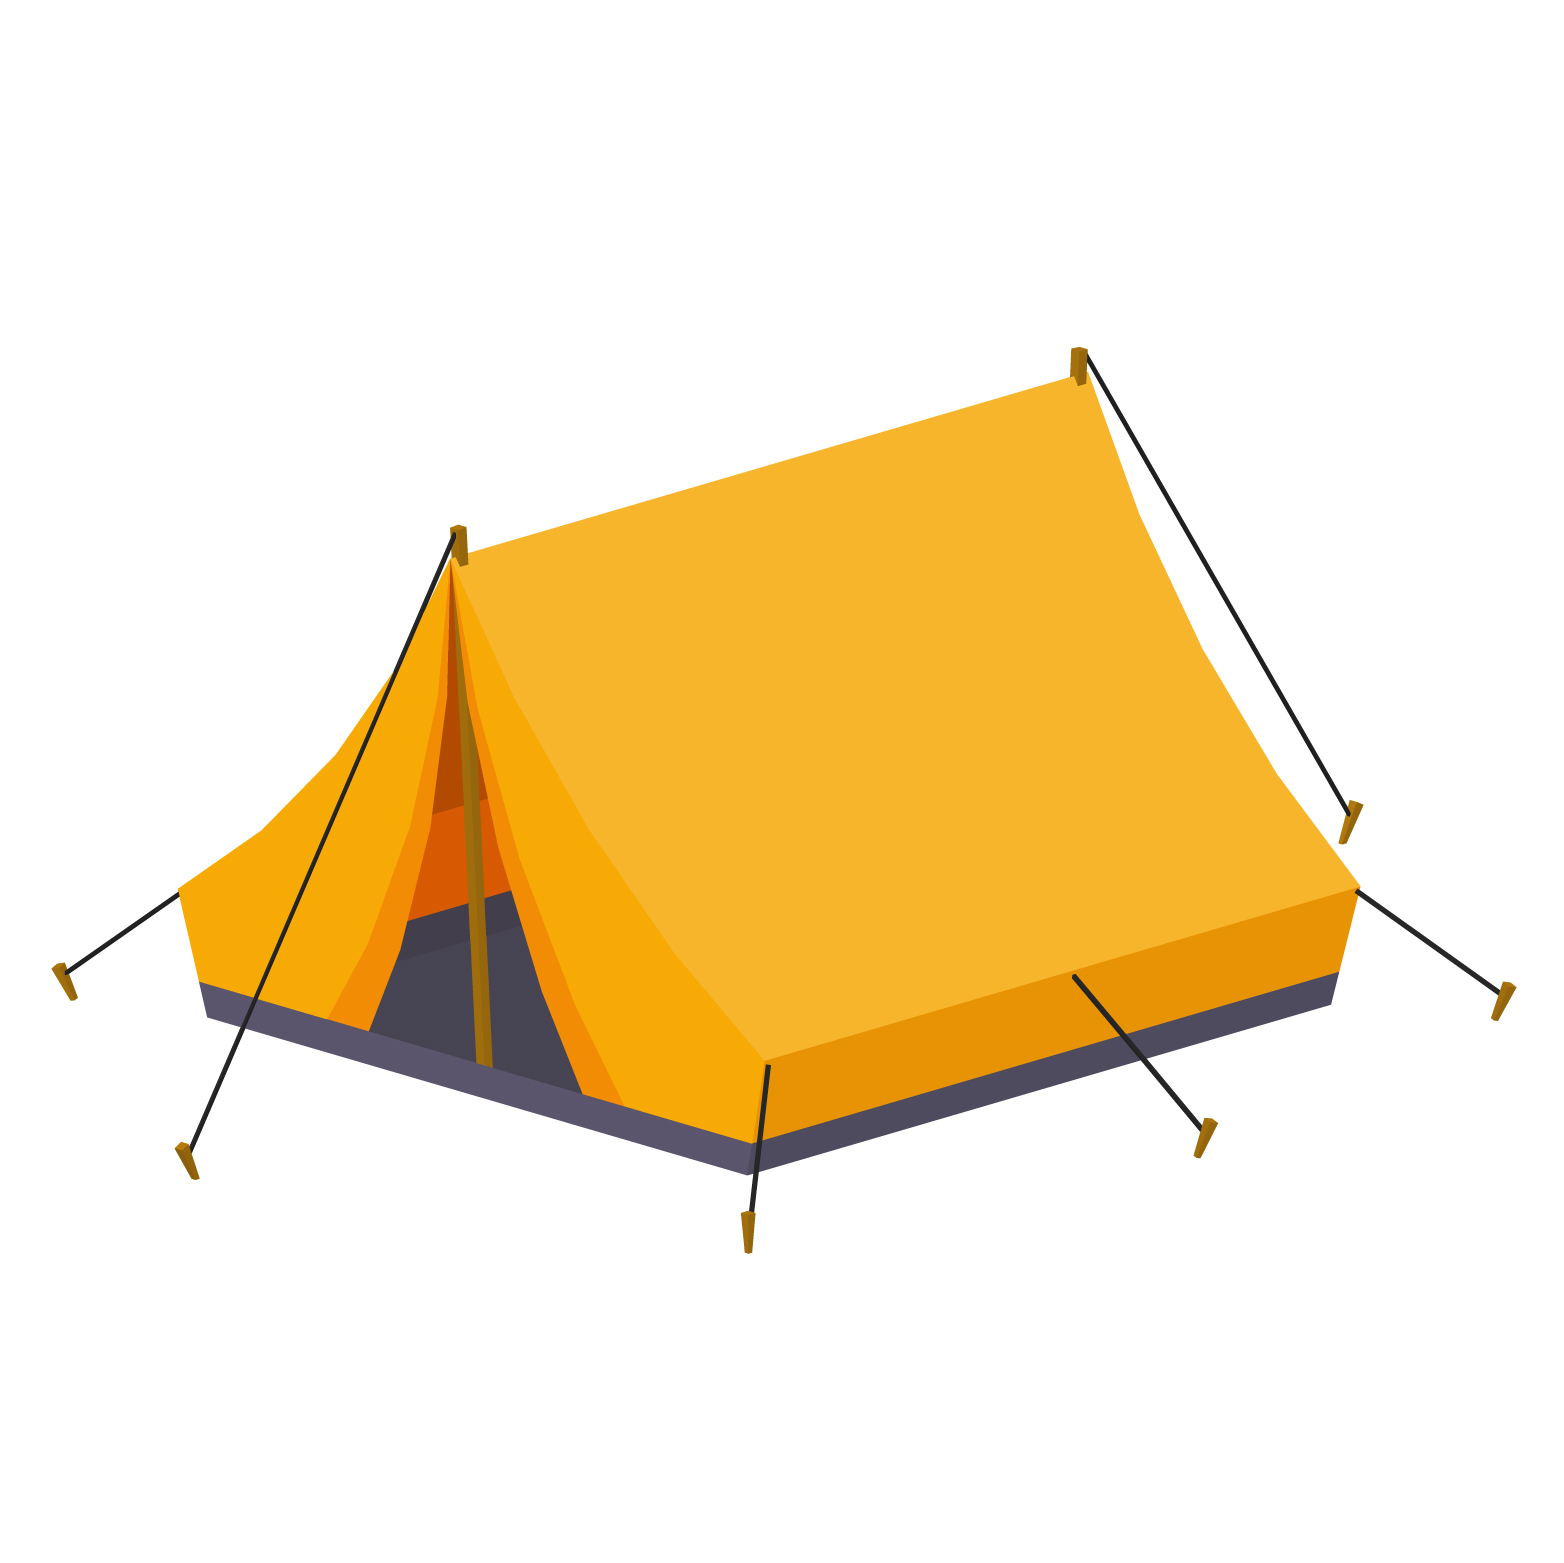 キャンプ用テント